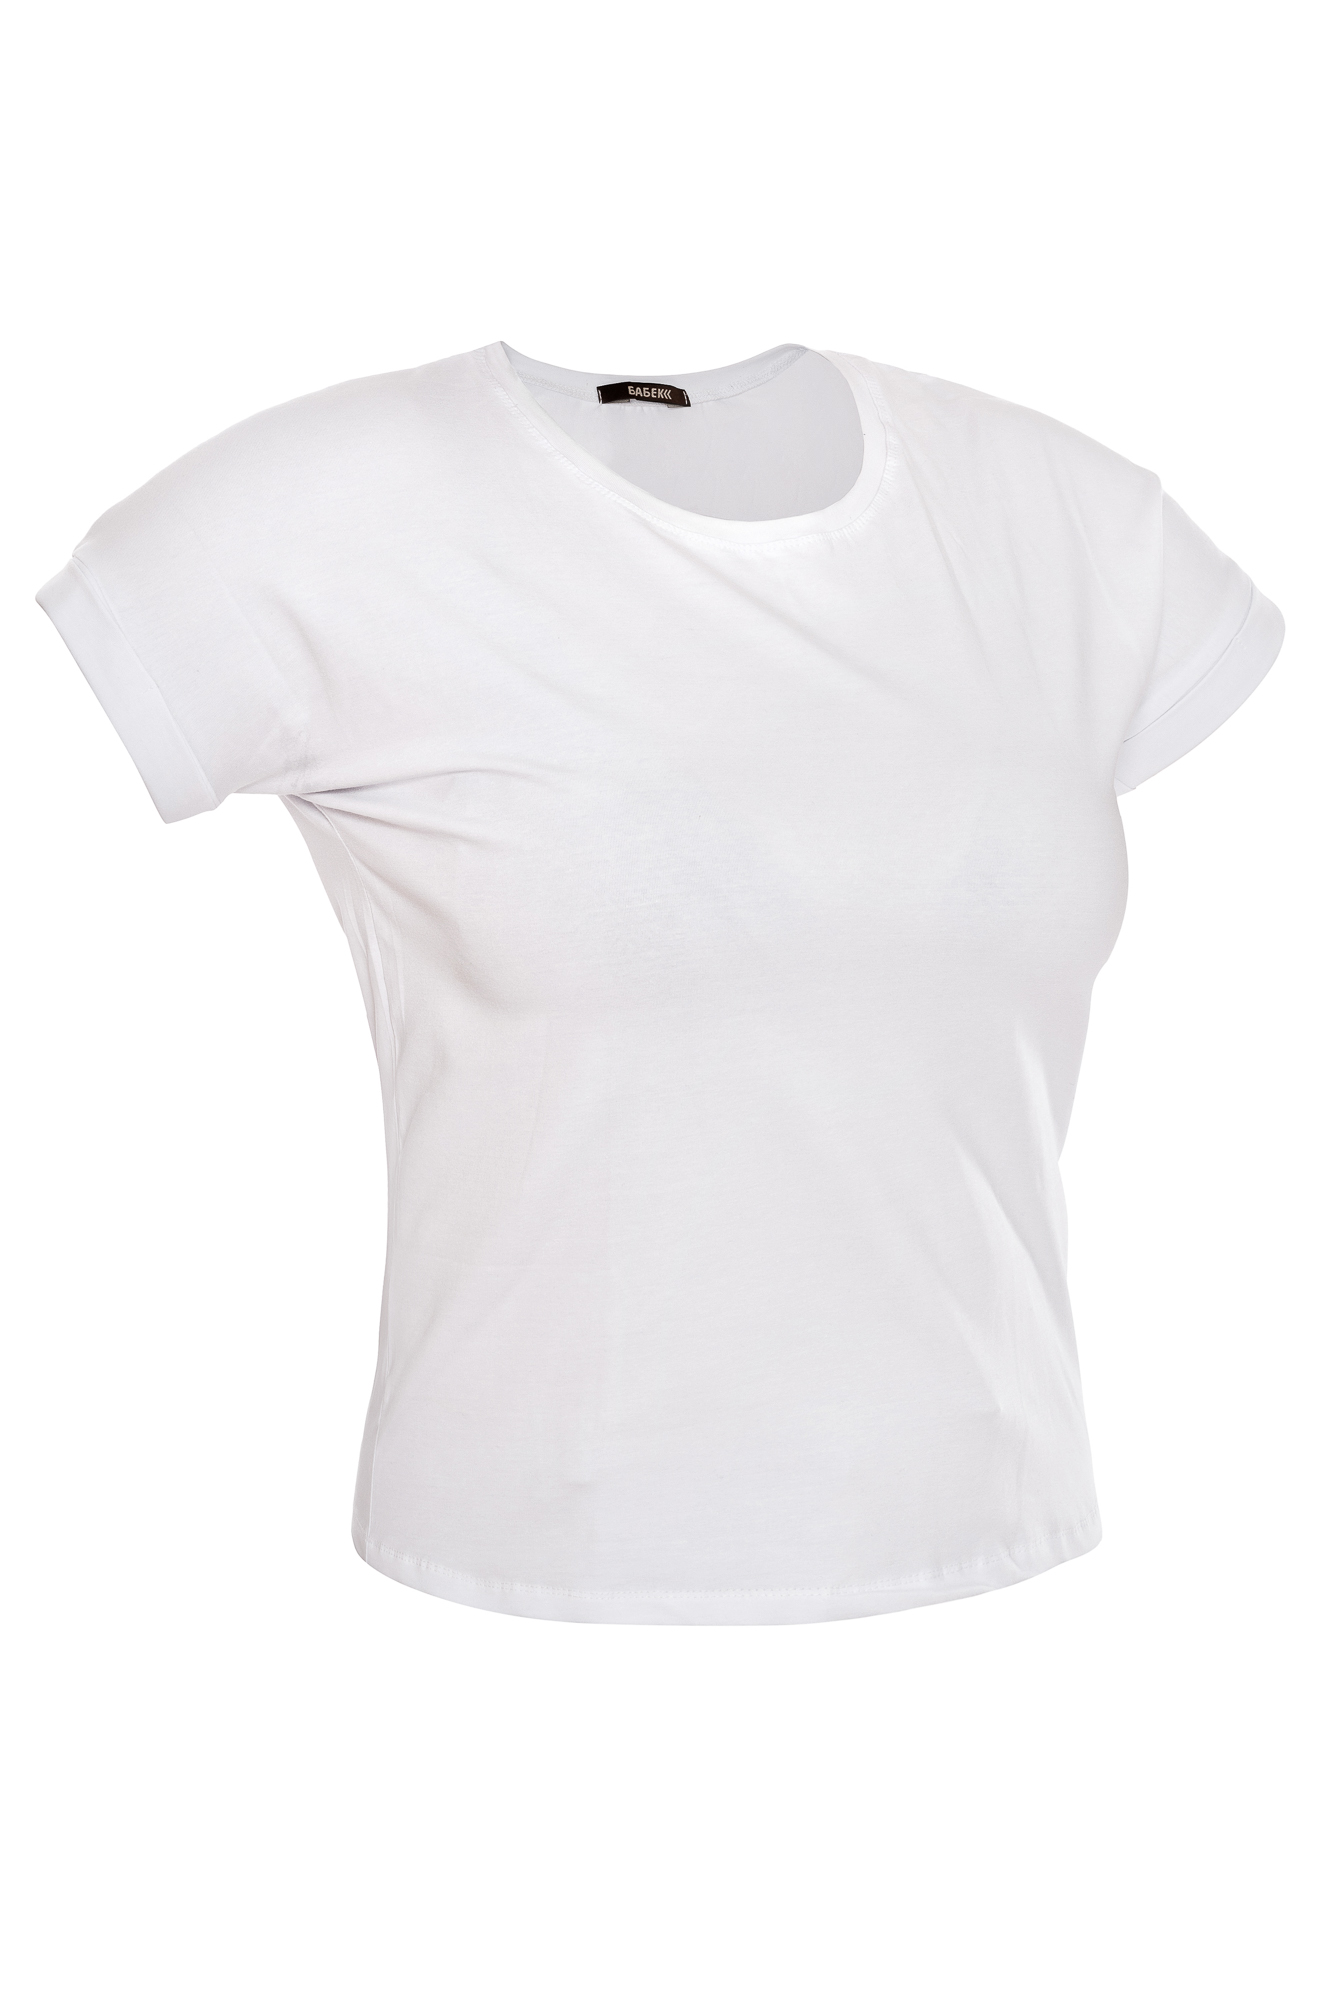 Женская футболка белая оптом и в розницу